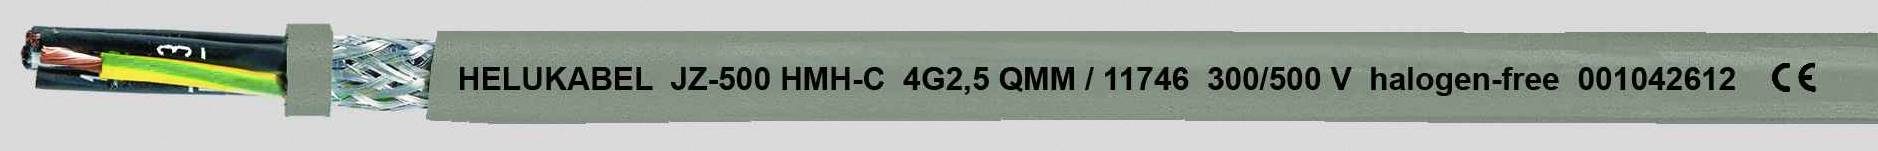 HELUKABEL JZ-500 HMH-C Steuerleitung 7 G 1.50 mm² Grau 11726-1000 1000 m